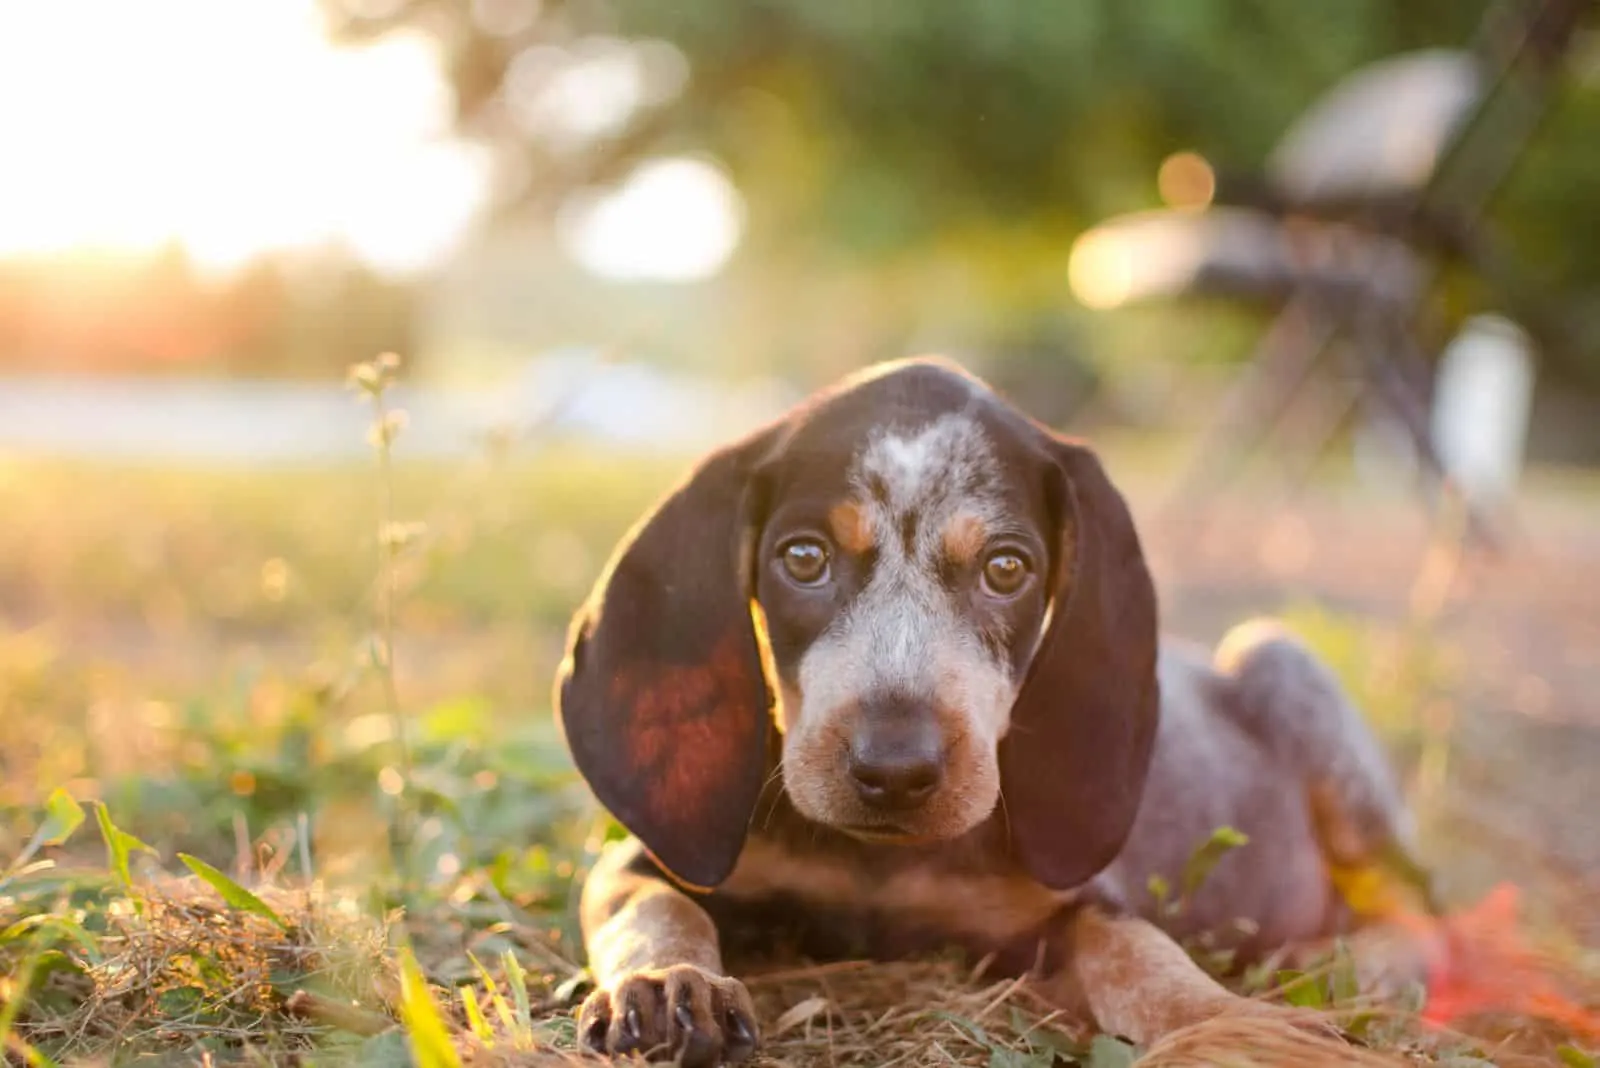 Coonhound puppy lies on the grass